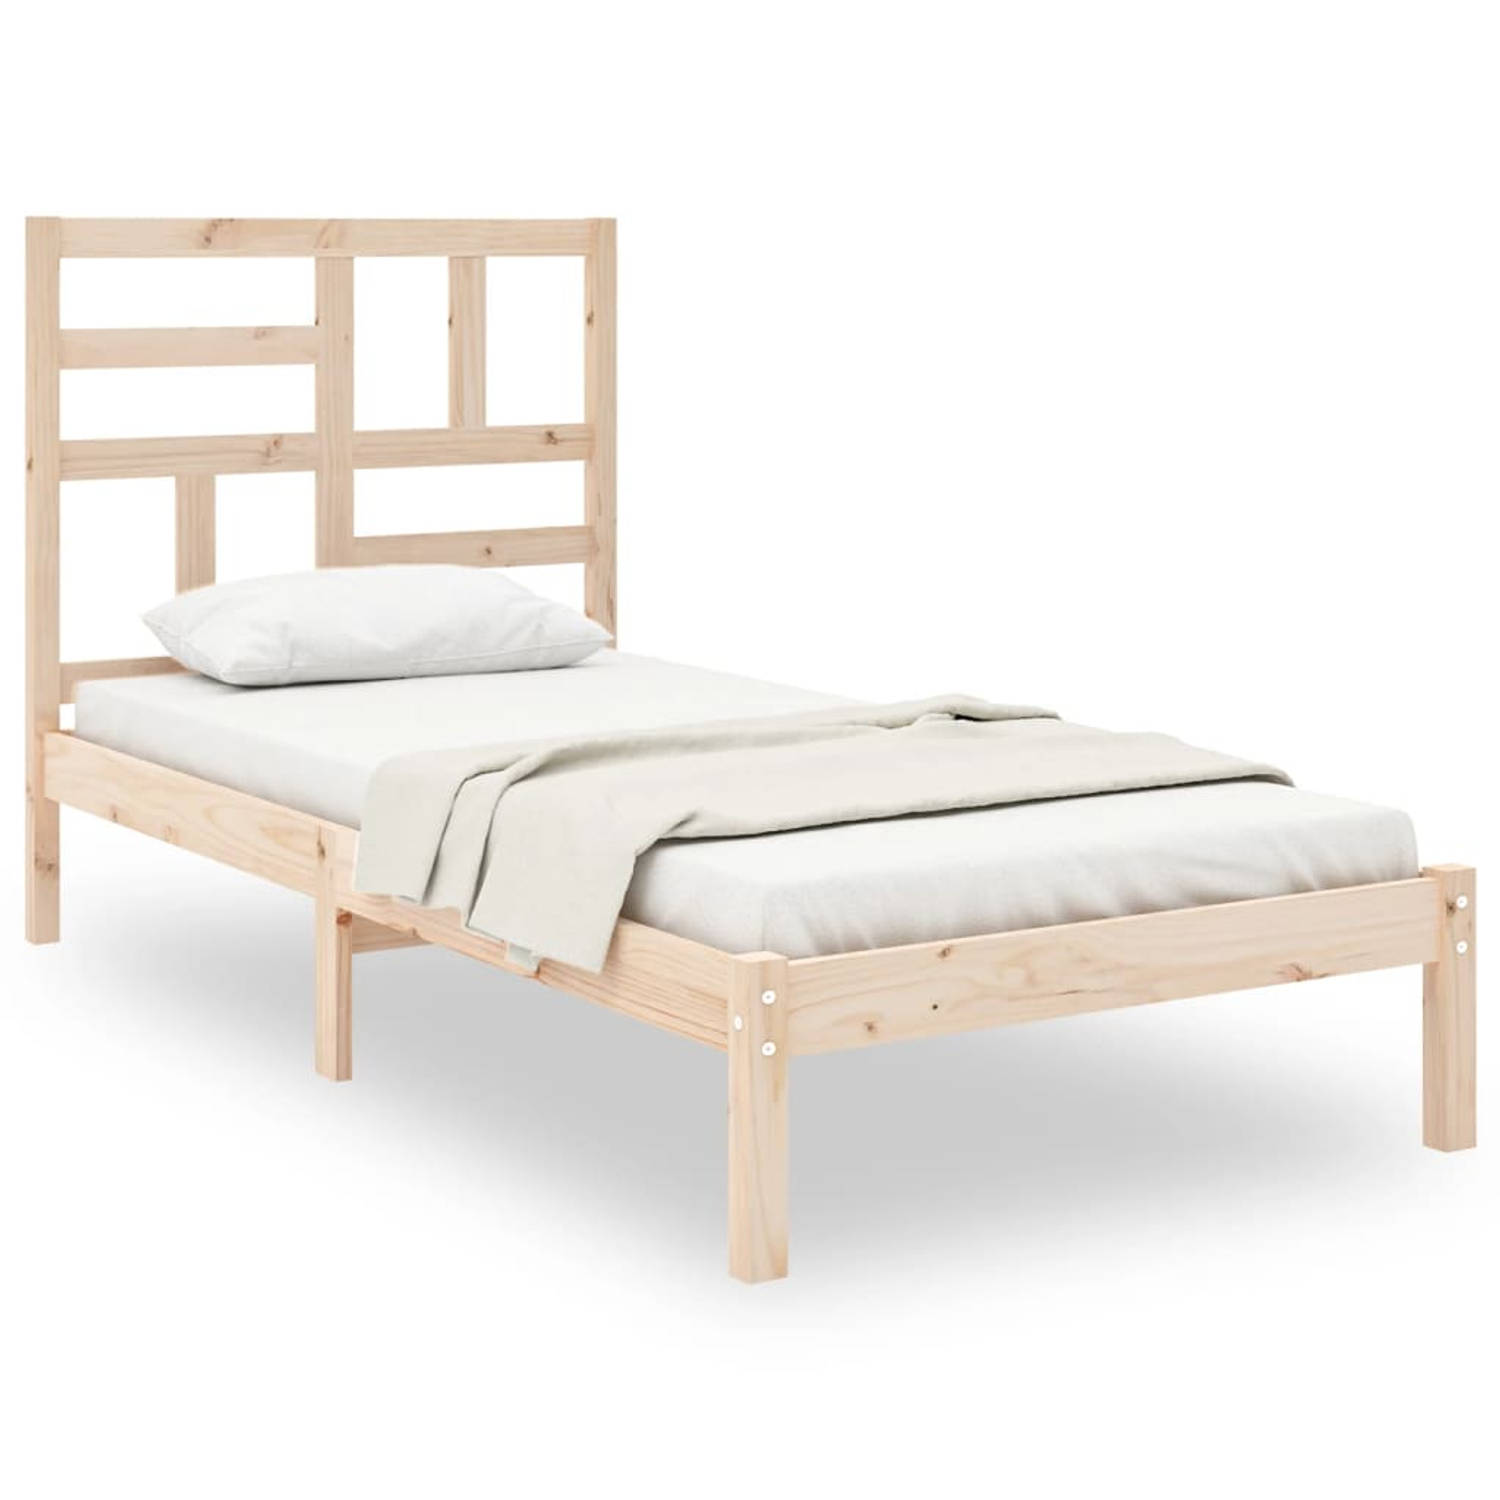 The Living Store Bedframe massief hout 100x200 cm - Bedframe - Bedframes - Bed - Bedbodem - Ledikant - Bed Frame - Massief Houten Bedframe - Slaapmeubel - Eenpersoonsbed - Bedden -